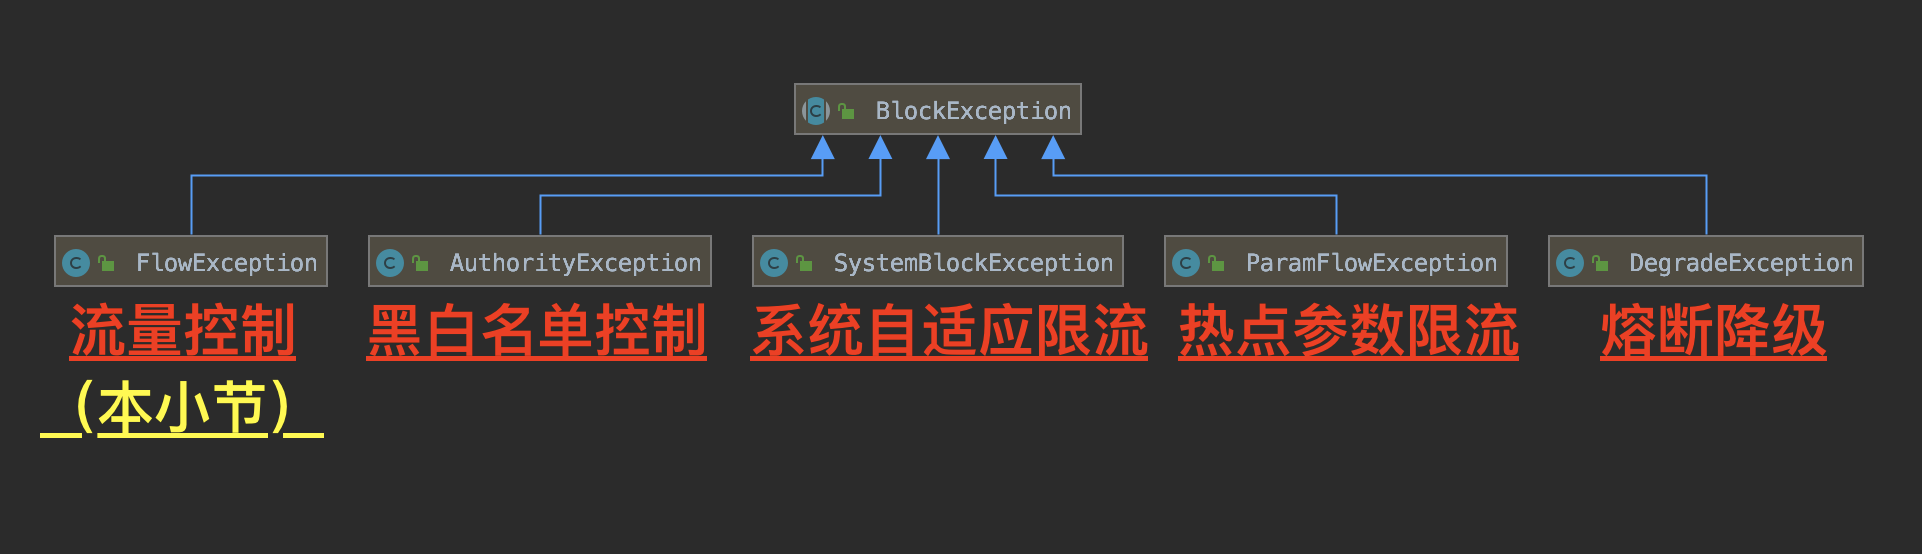 BlockException 类图